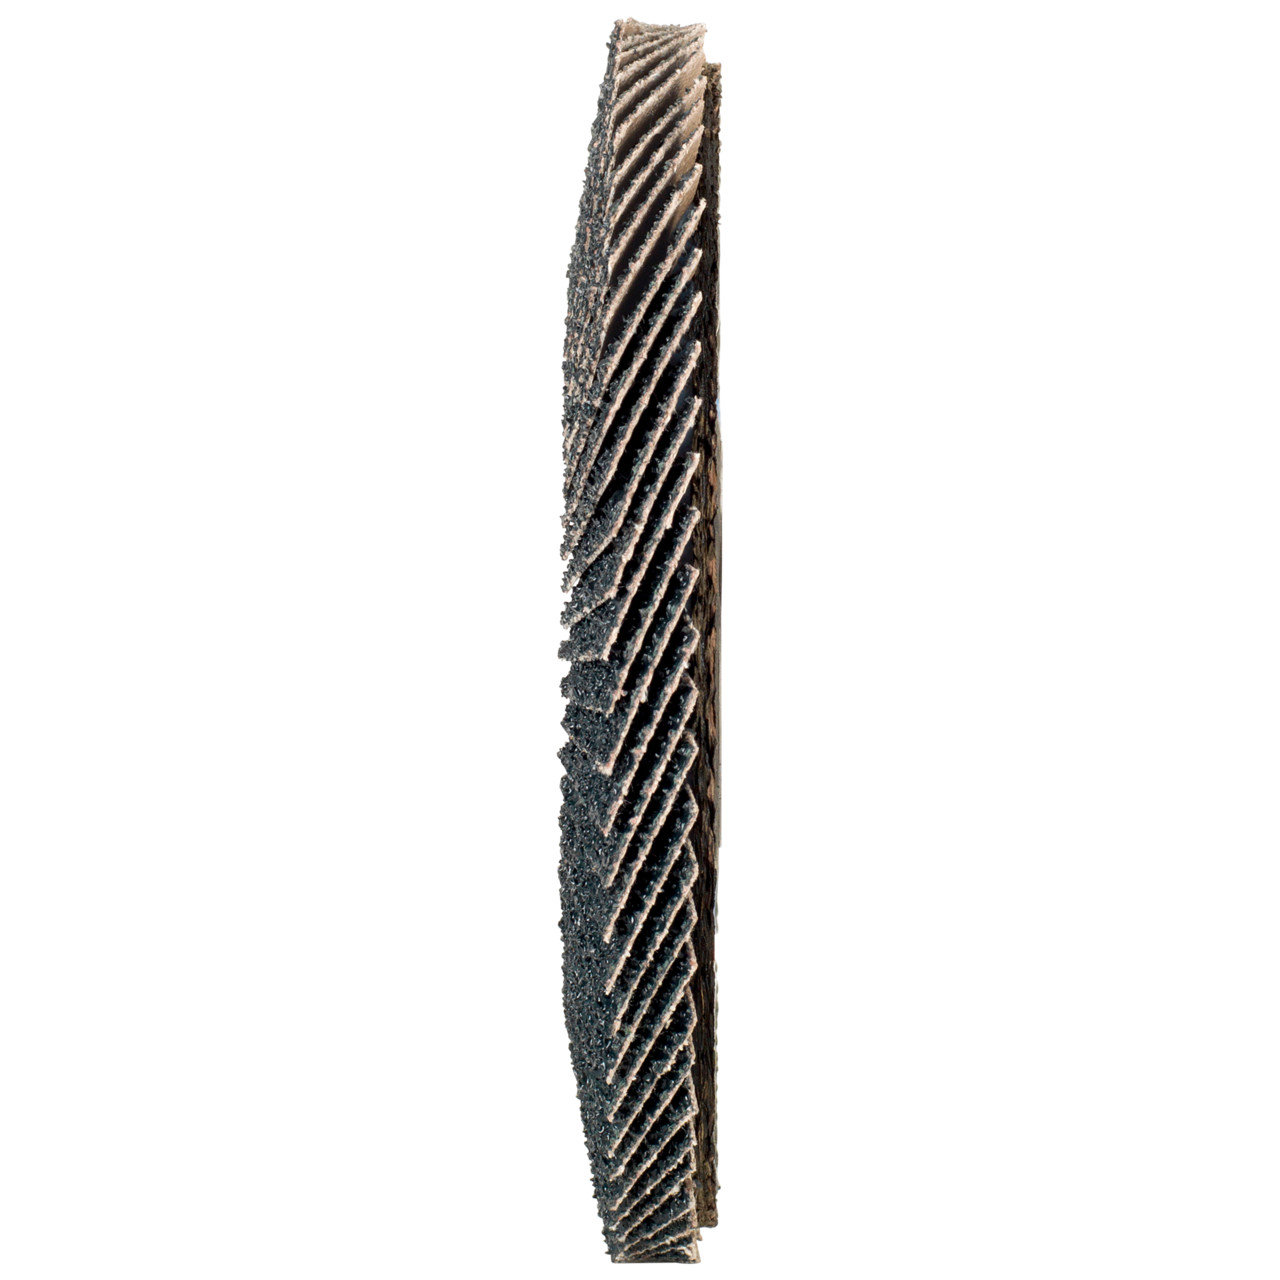 Tyrolit Gekartelde borgring DxH 178x22,2 2in1 voor staal &amp; roestvrij staal, P40, vorm: 27A - offset versie (glasvezeldrager body versie), Art. 668670